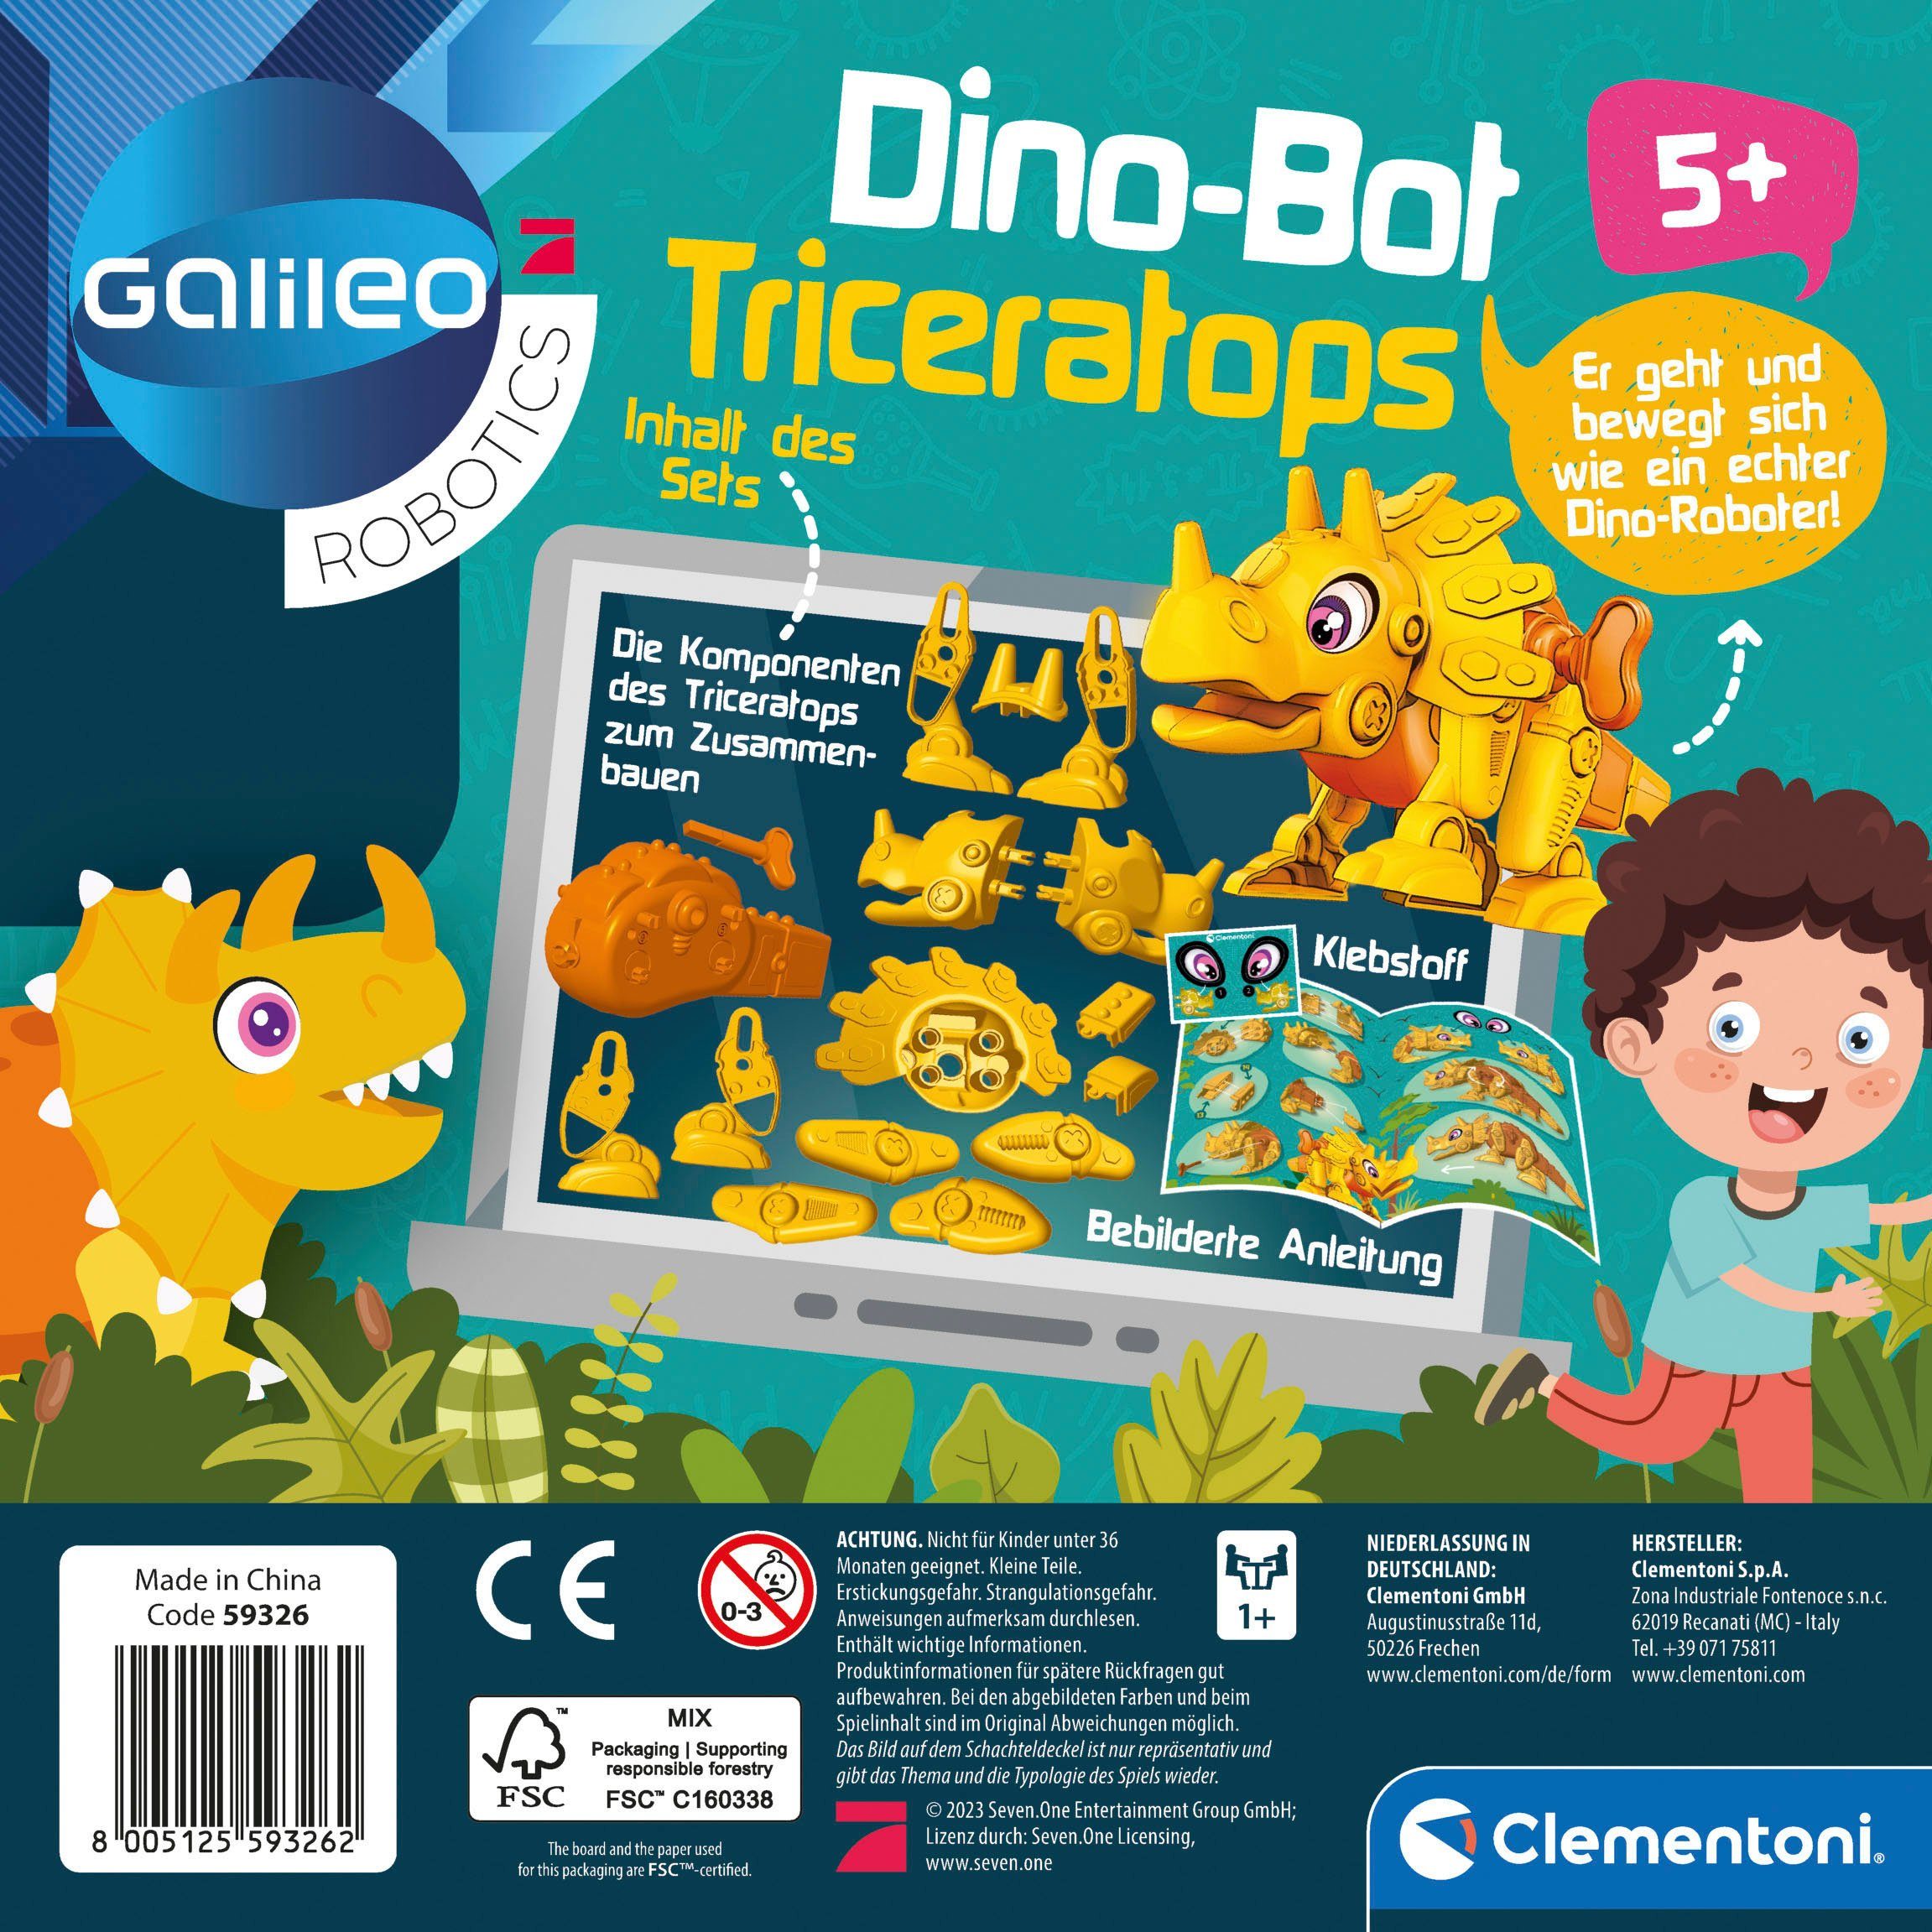 Europe Made Clementoni® in DinoBot Galileo, Triceratops, Roboter